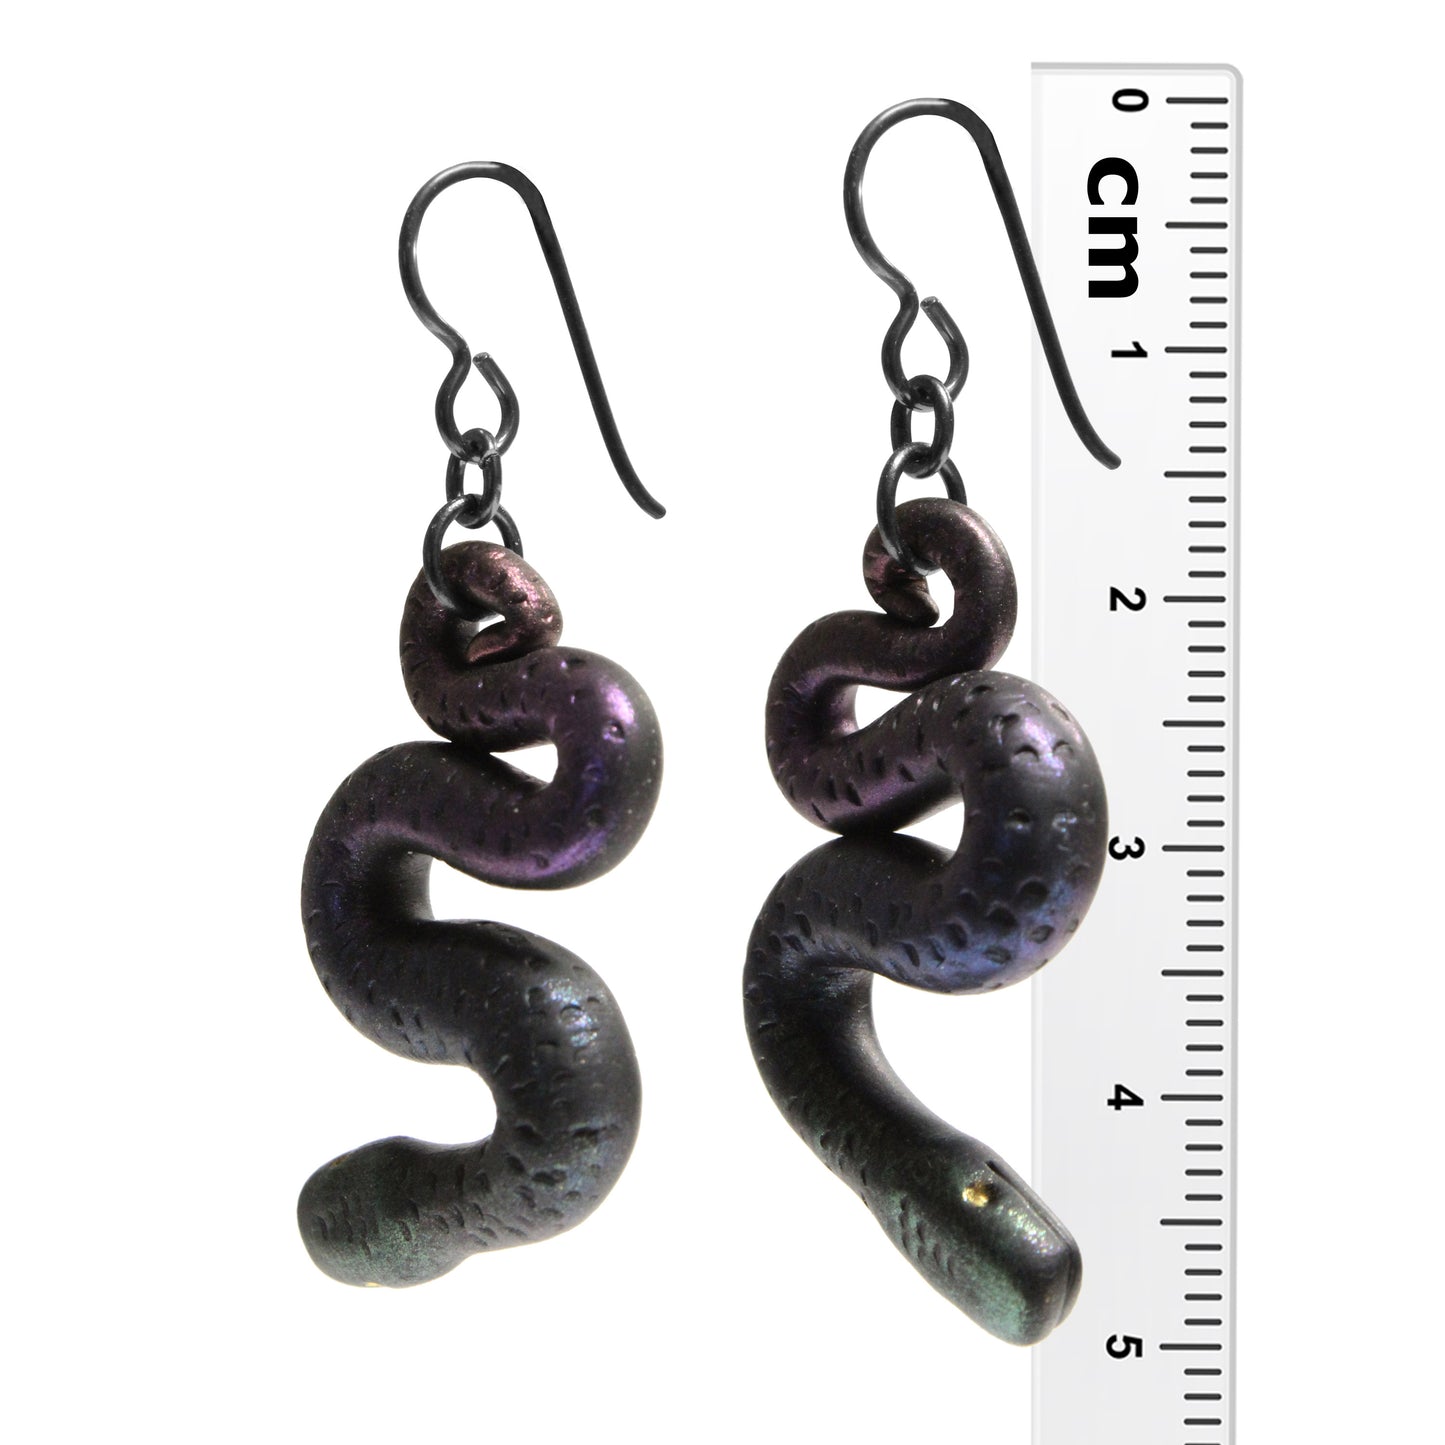 Dark Rainbow Serpent Earrings / 50mm length / black niobium hook earwires